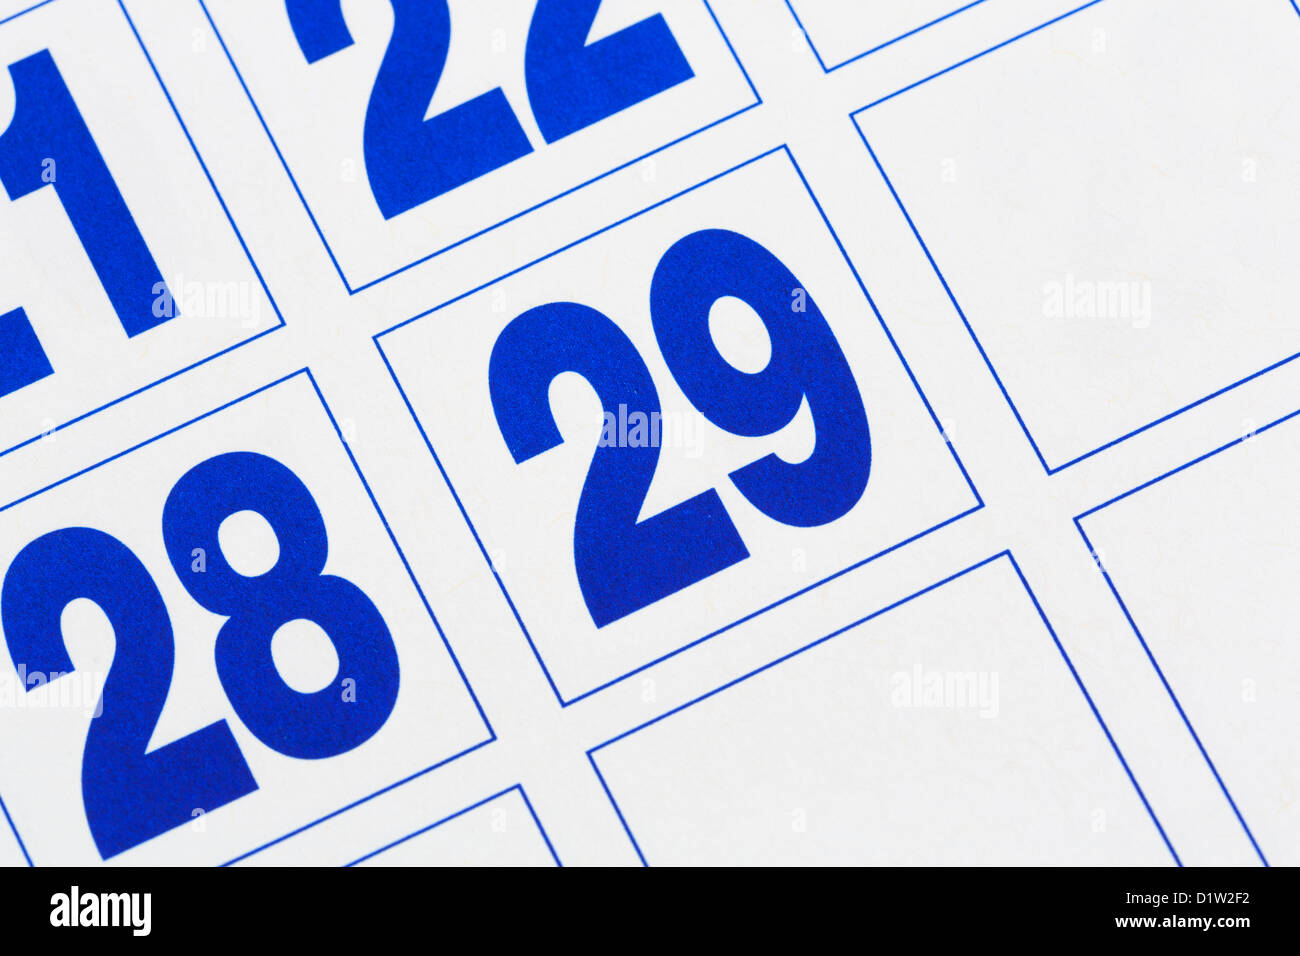 Clôture du dernier jour sur un calendrier affichant le 29 jour du mois de février dans une année bissextile 2016 ou 2020 Banque D'Images